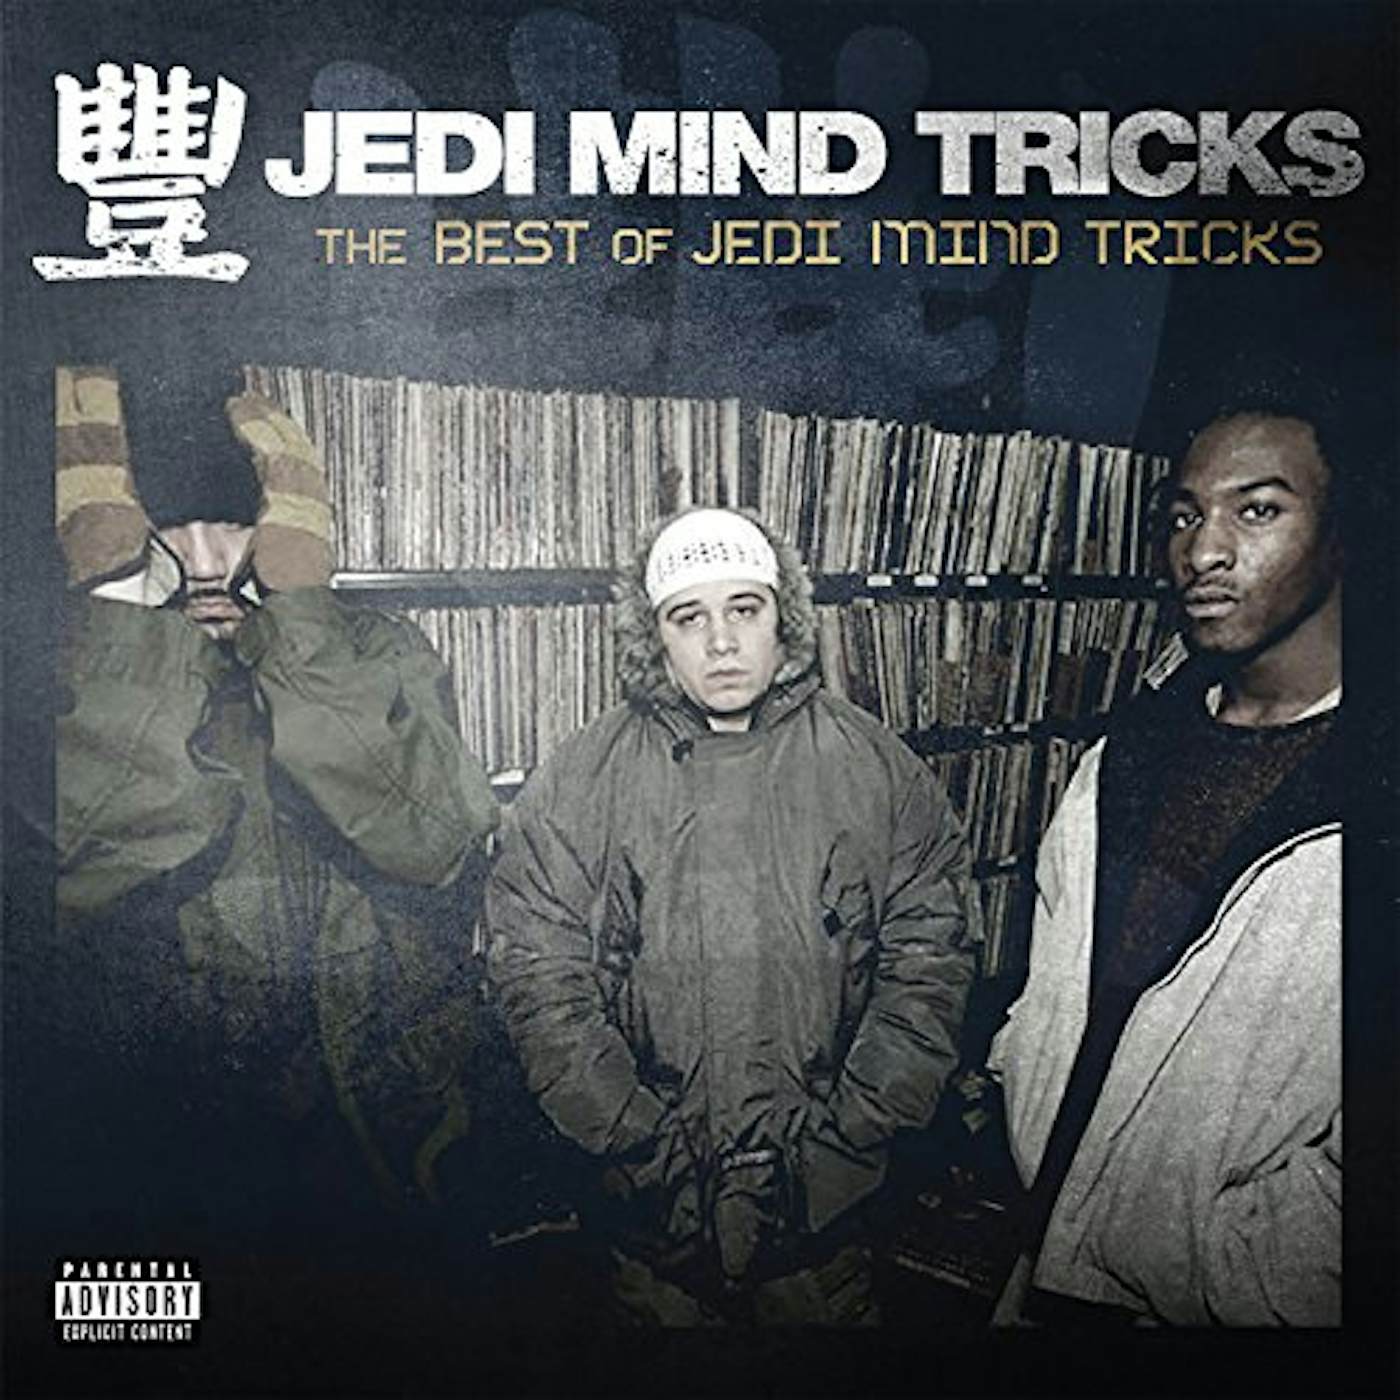 BEST OF JEDI MIND TRICKS CD